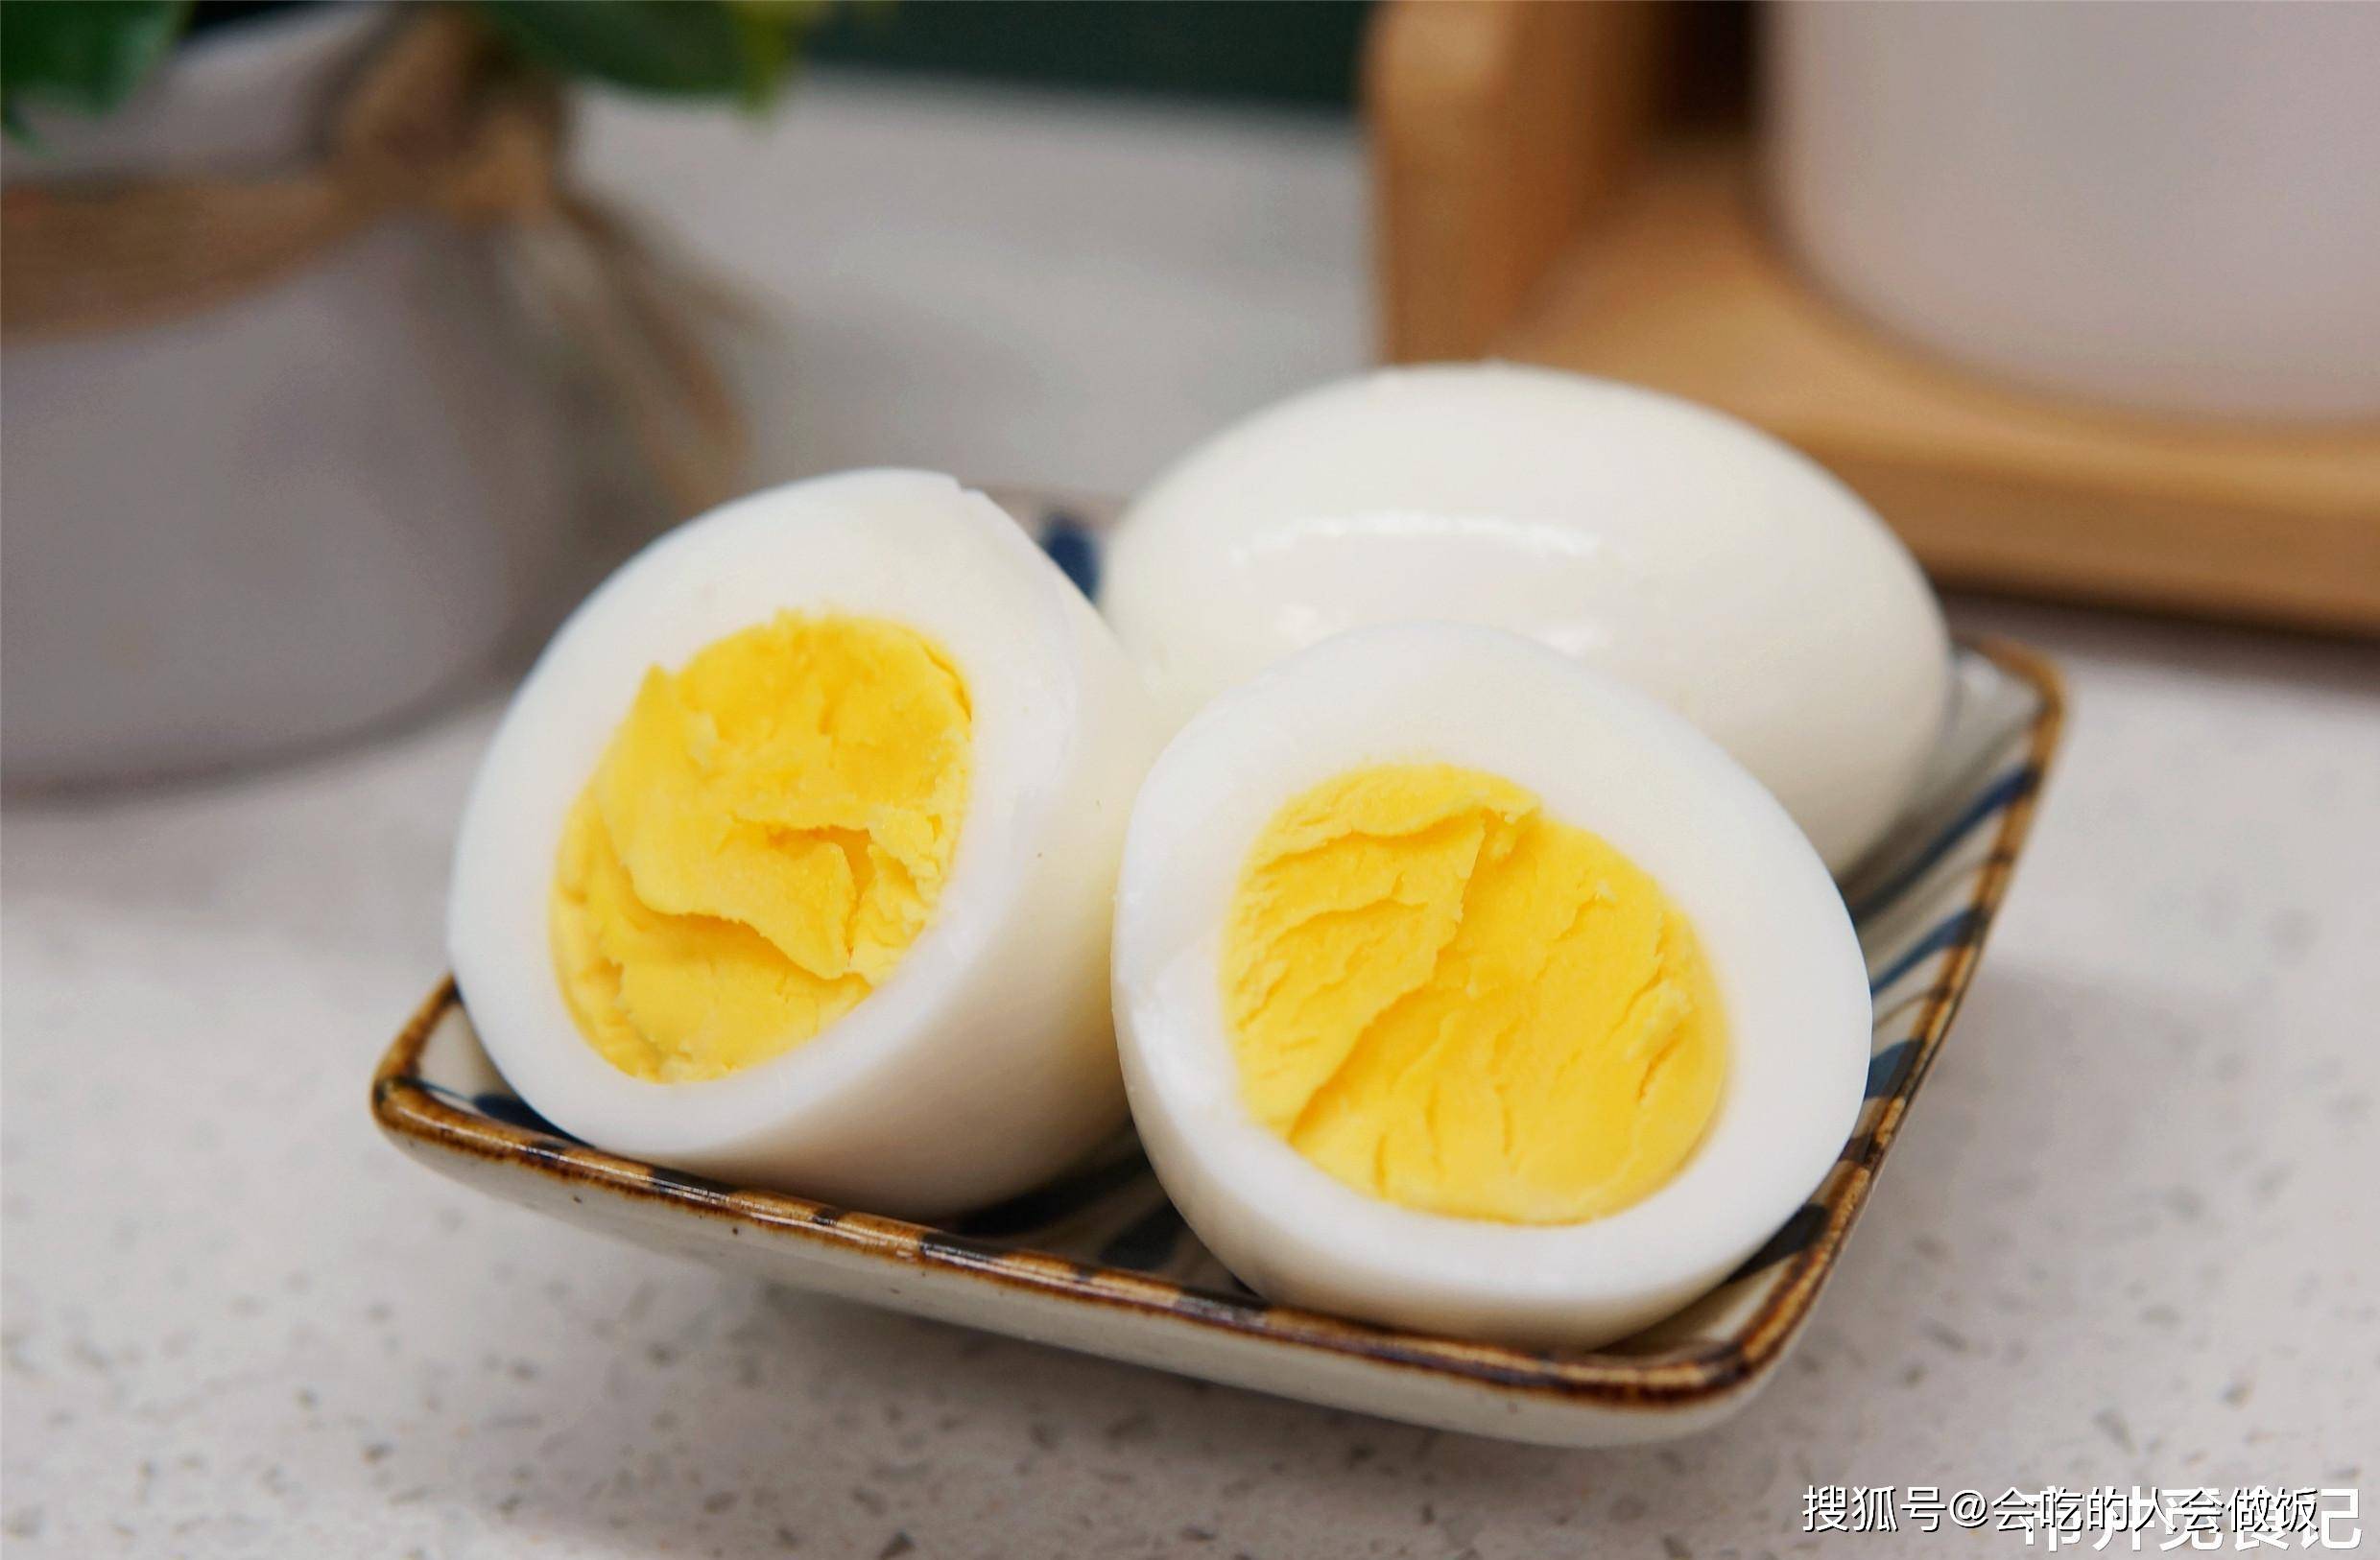 原创煮鸡蛋时,不能只用清水,多加一样,蛋壳手一搓就掉,干净快速